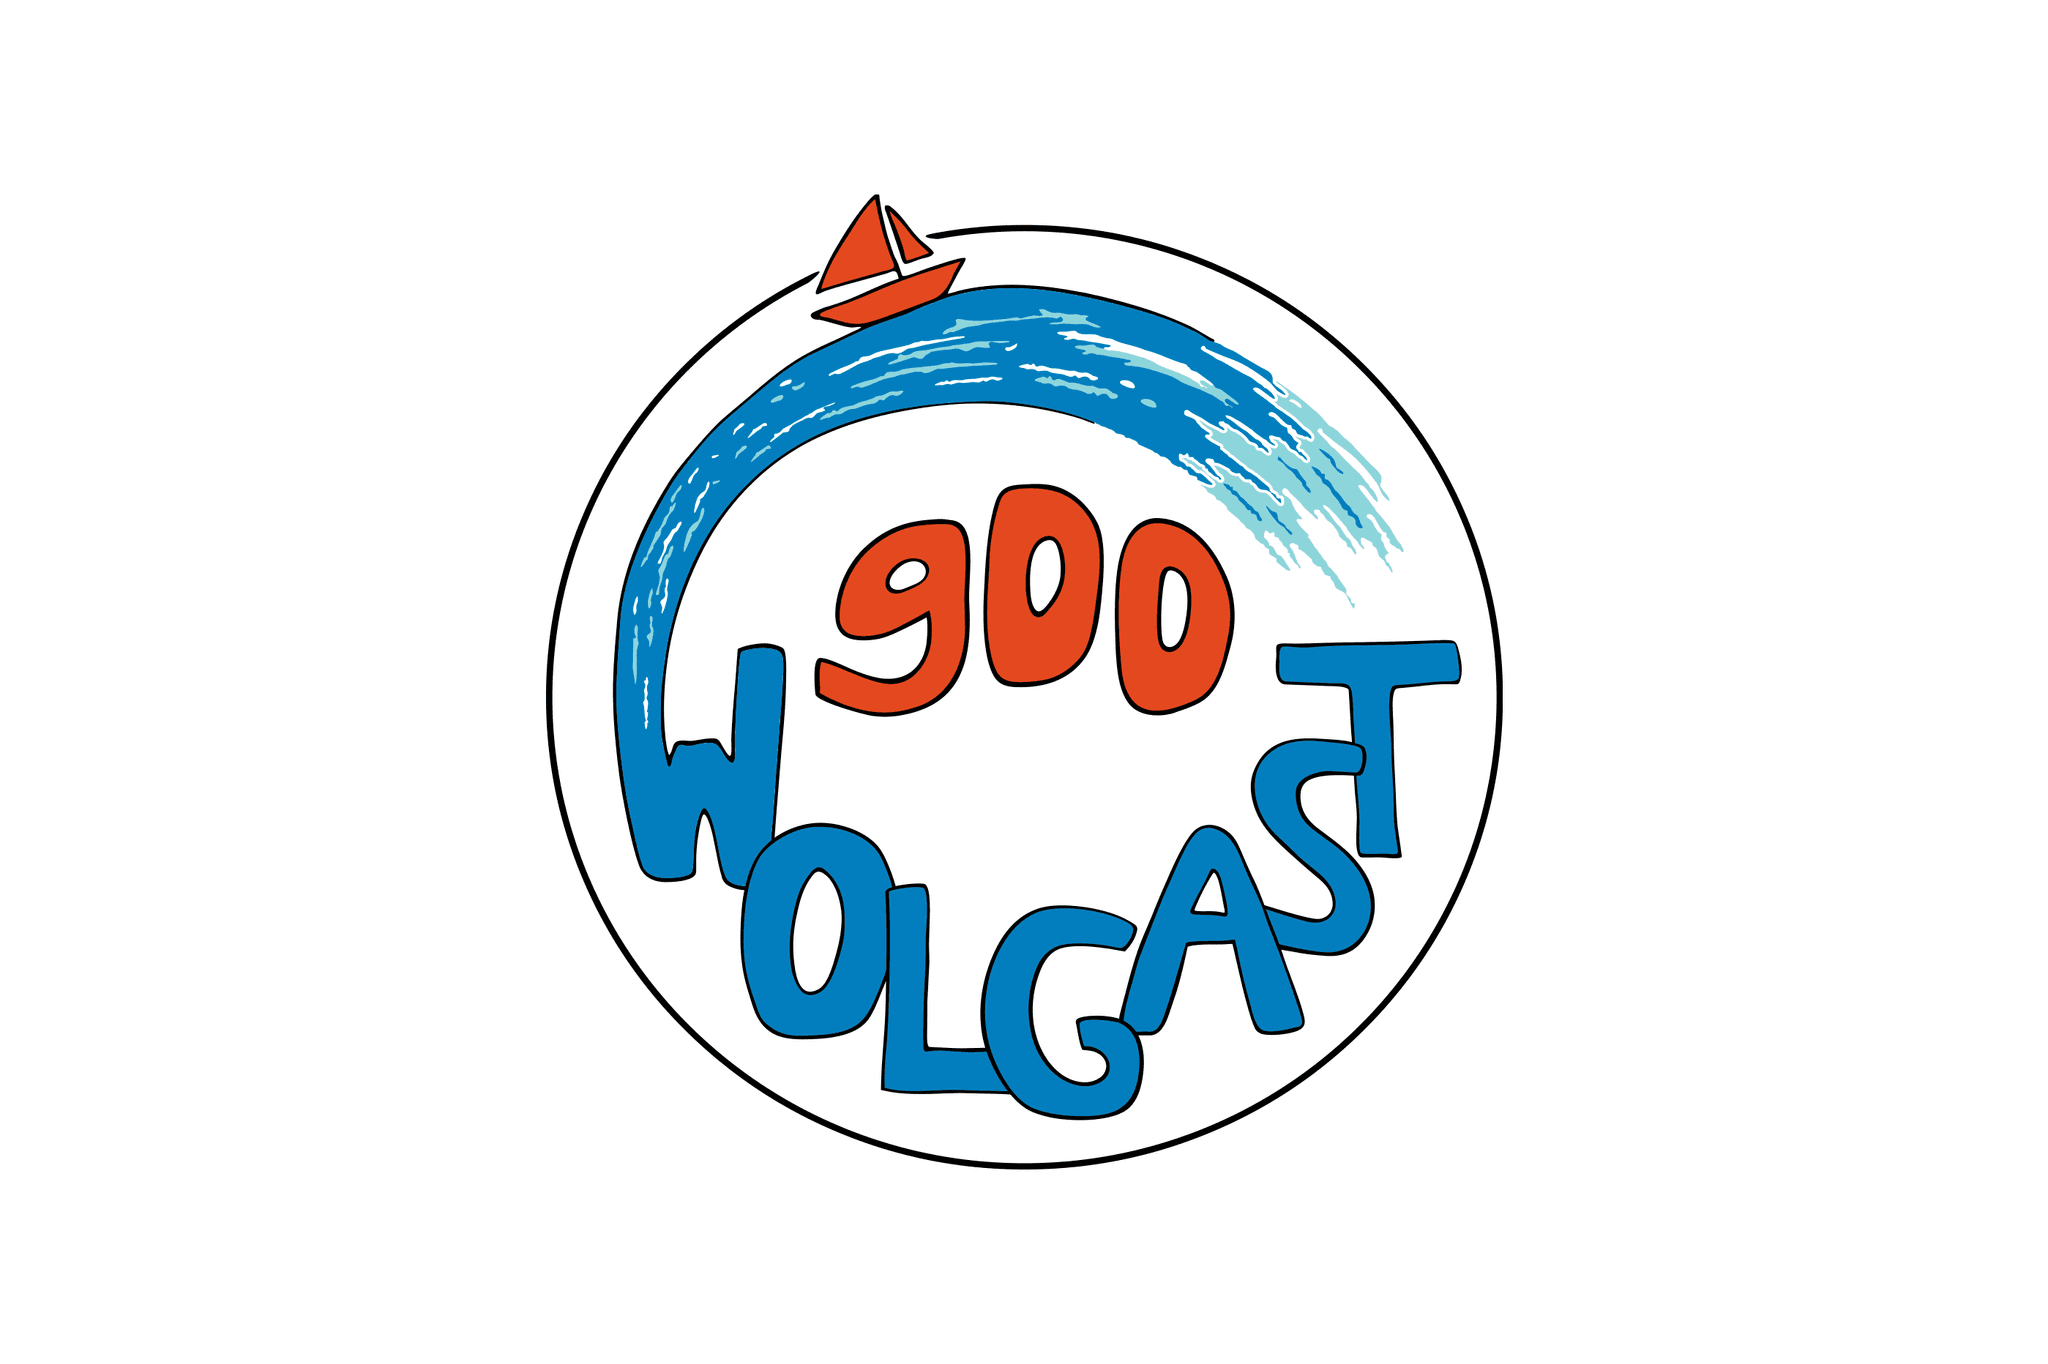 rundes Logo mit Schriftzug "Wolgast 900", Welle und einem Segelboot